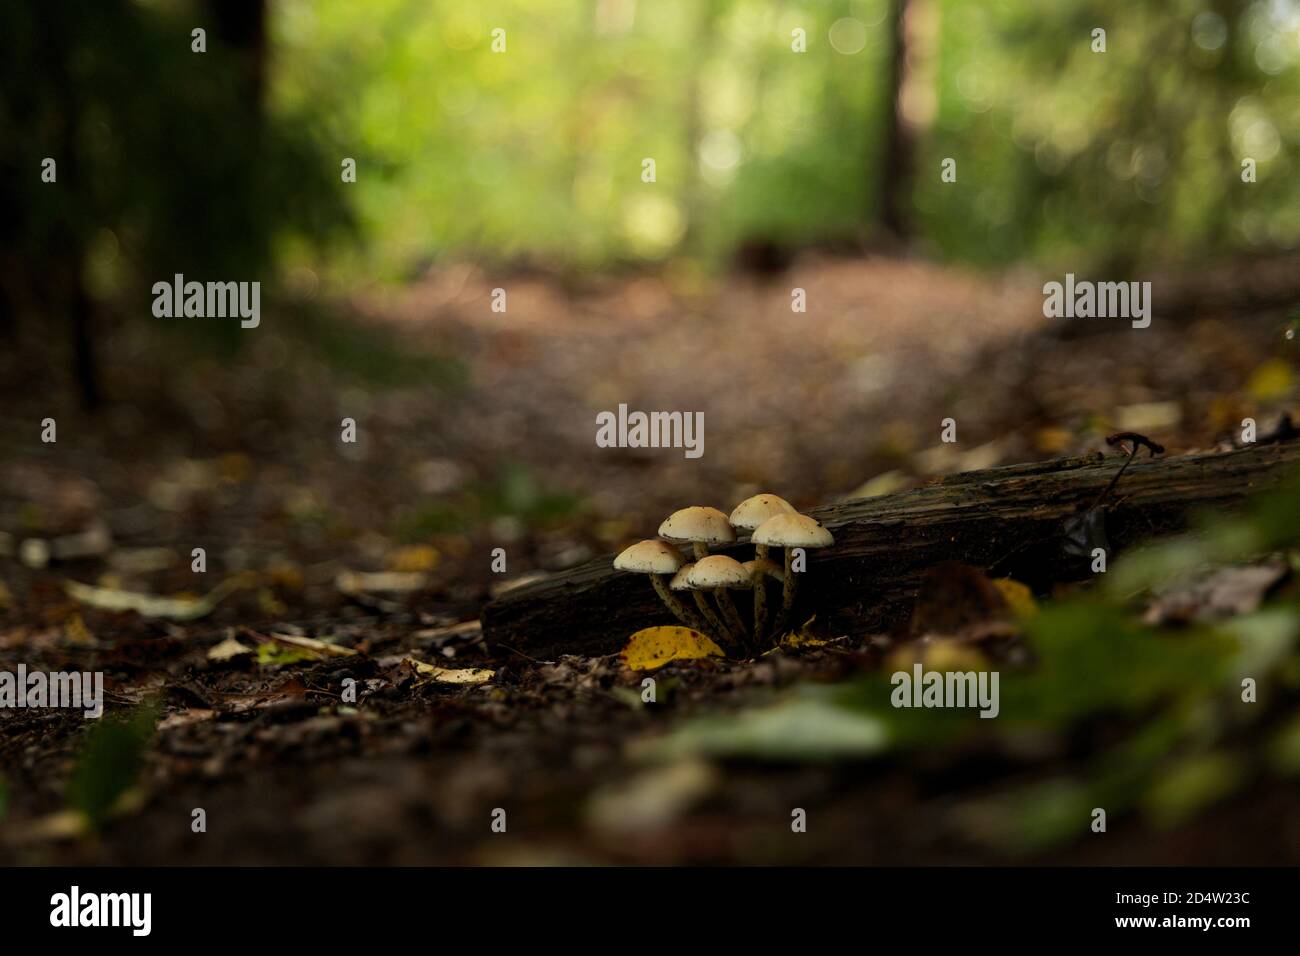 Die Gruppe der wilden Pilze, die auf dem Balken im Wald wachsen. Vollformat, Fokus auf Mittelfeld, Naturfotografie. Stockfoto